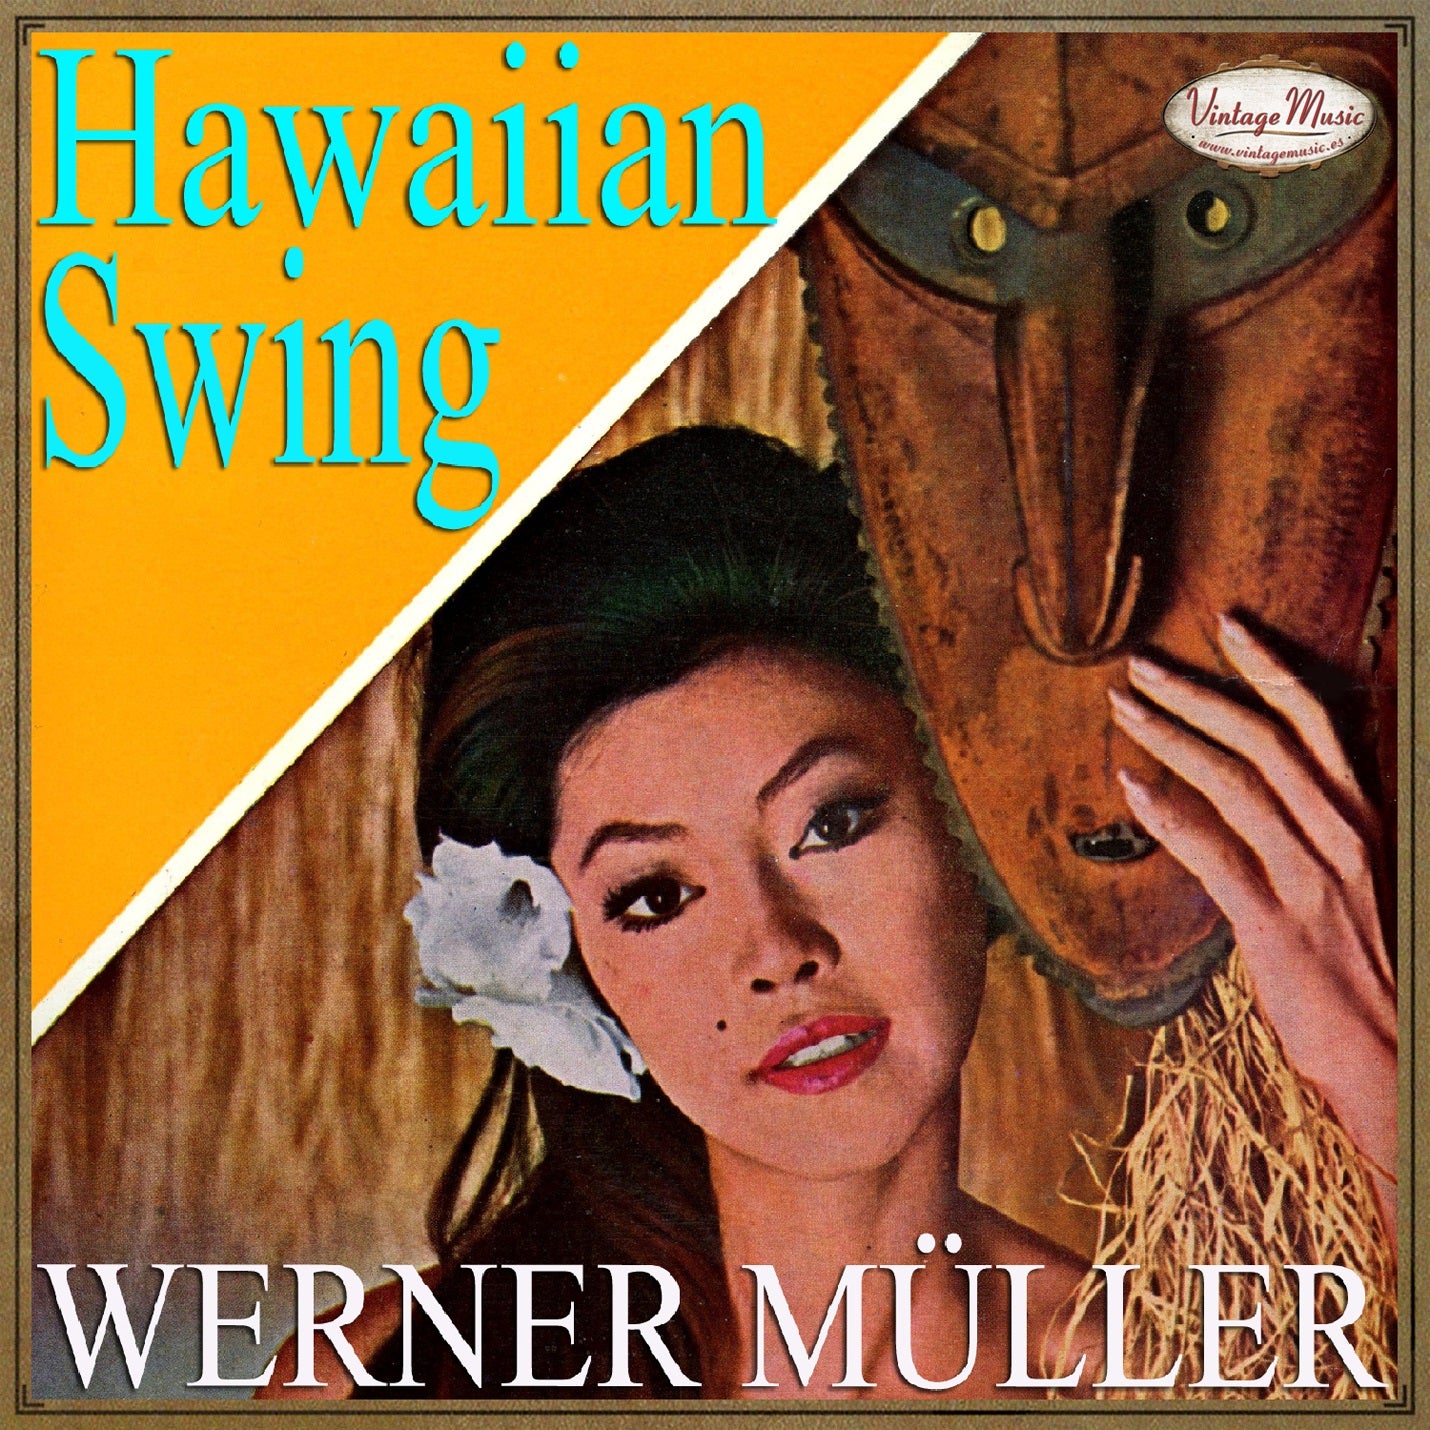 Werner Müller (Colección Vintage Music)